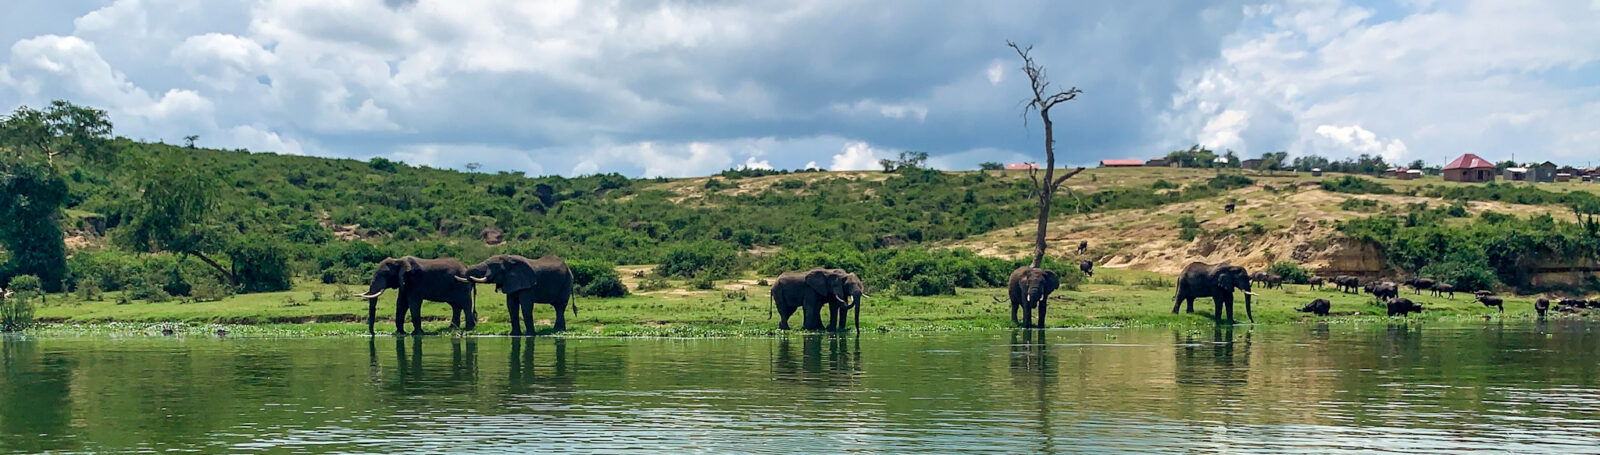 Elephant herd at Kazinga Channel, Uganda